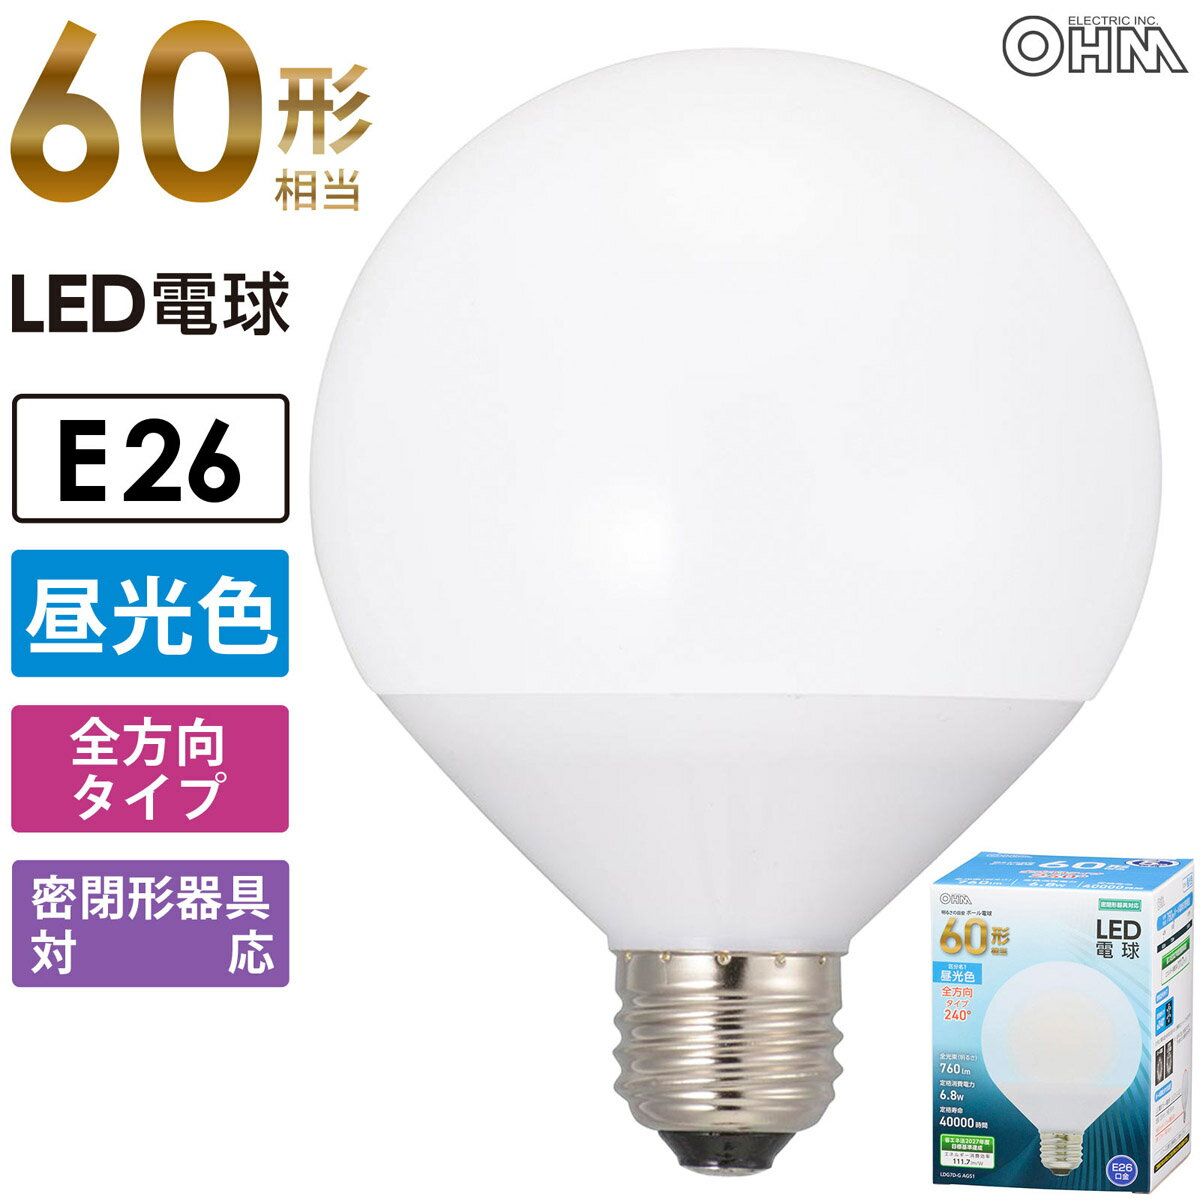 LED電球 ボール電球形 E26 60形相当 昼光色｜LDG7D-G AG51 06-3166 オーム電機 1